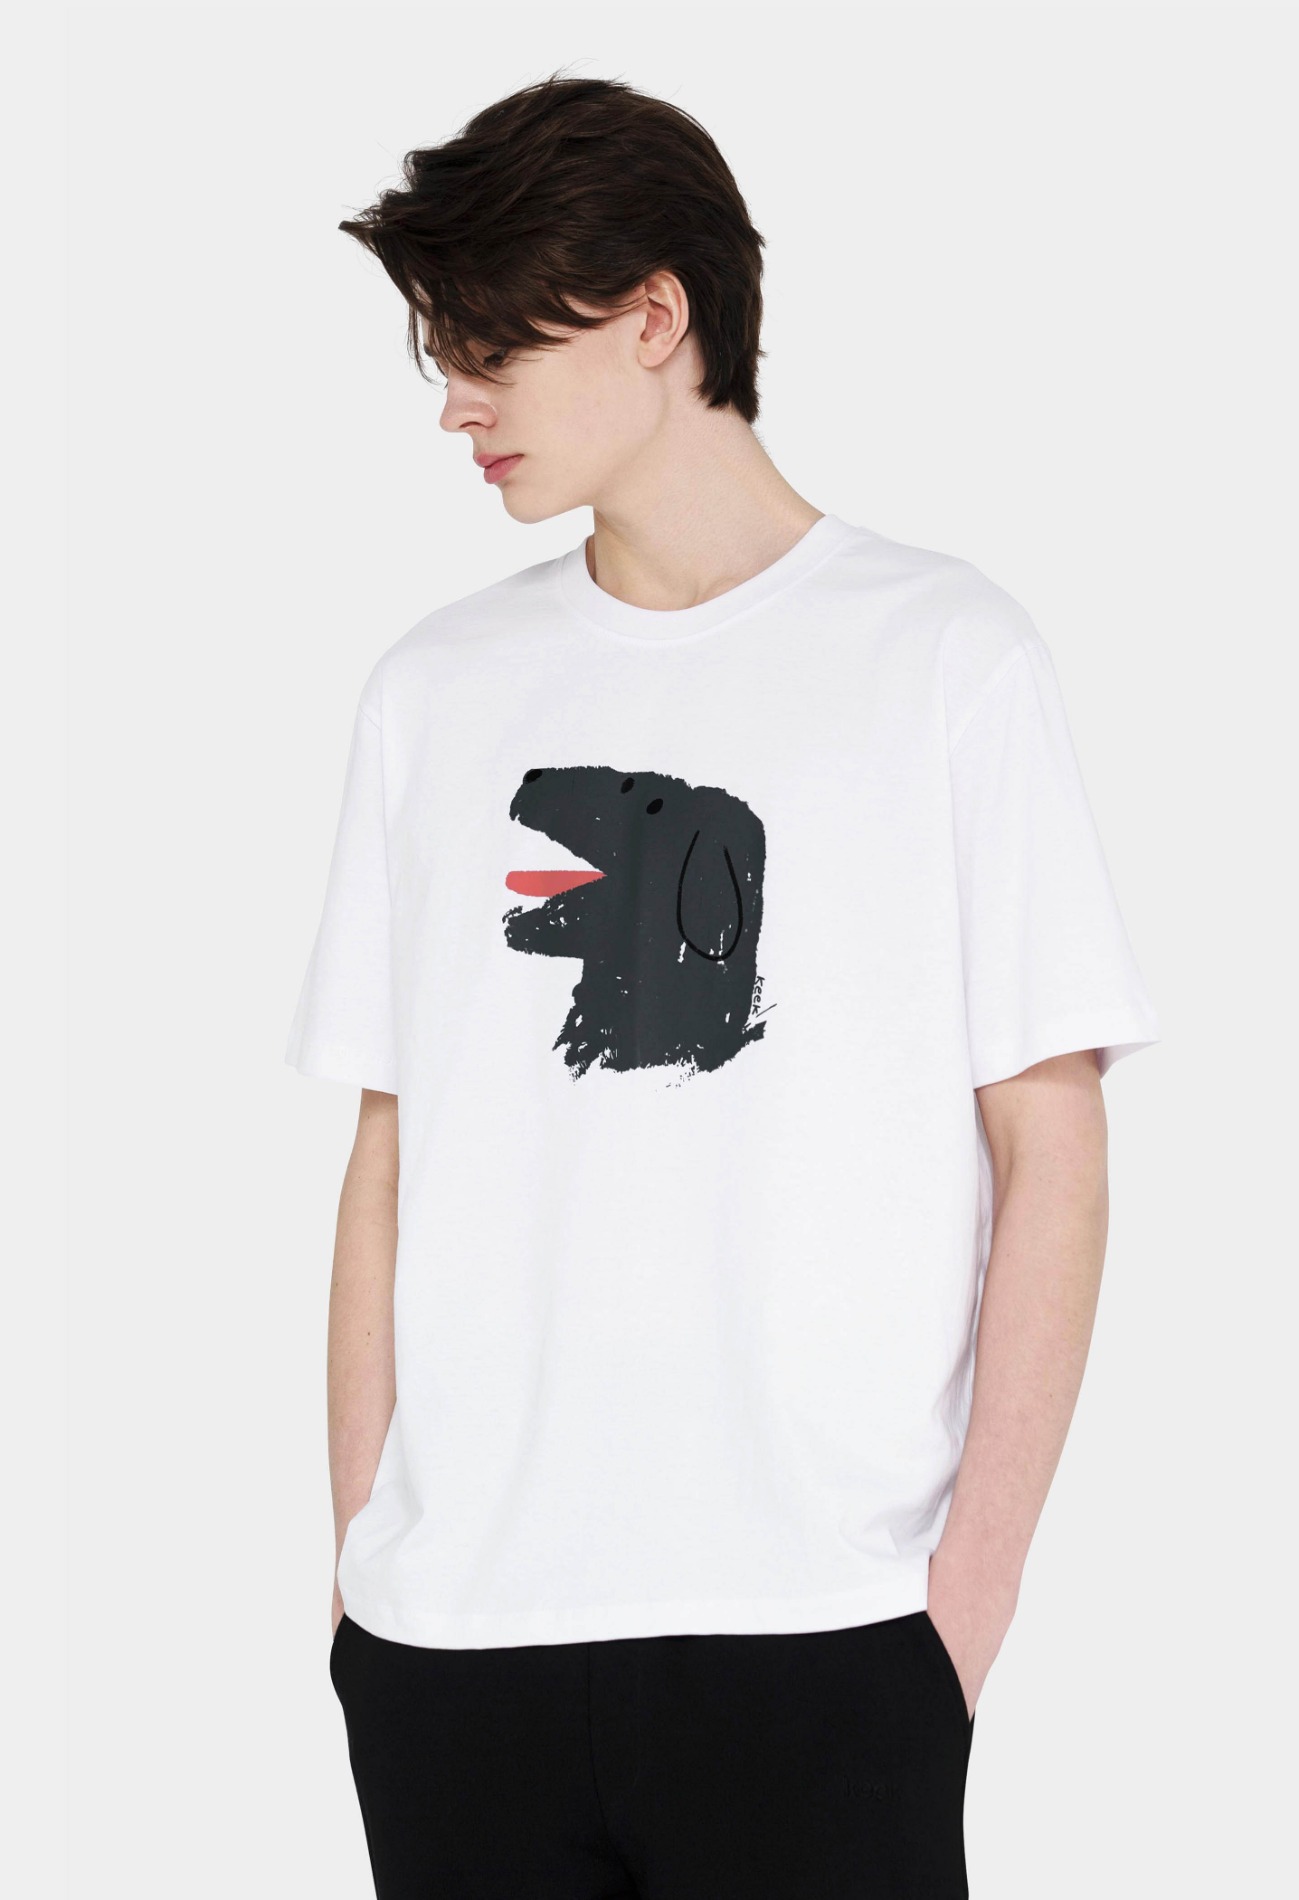 keek [Unisex] Doggy T-shirts - White 스트릿패션 유니섹스브랜드 커플시밀러룩 남자쇼핑몰 여성의류쇼핑몰 후드티 힙색